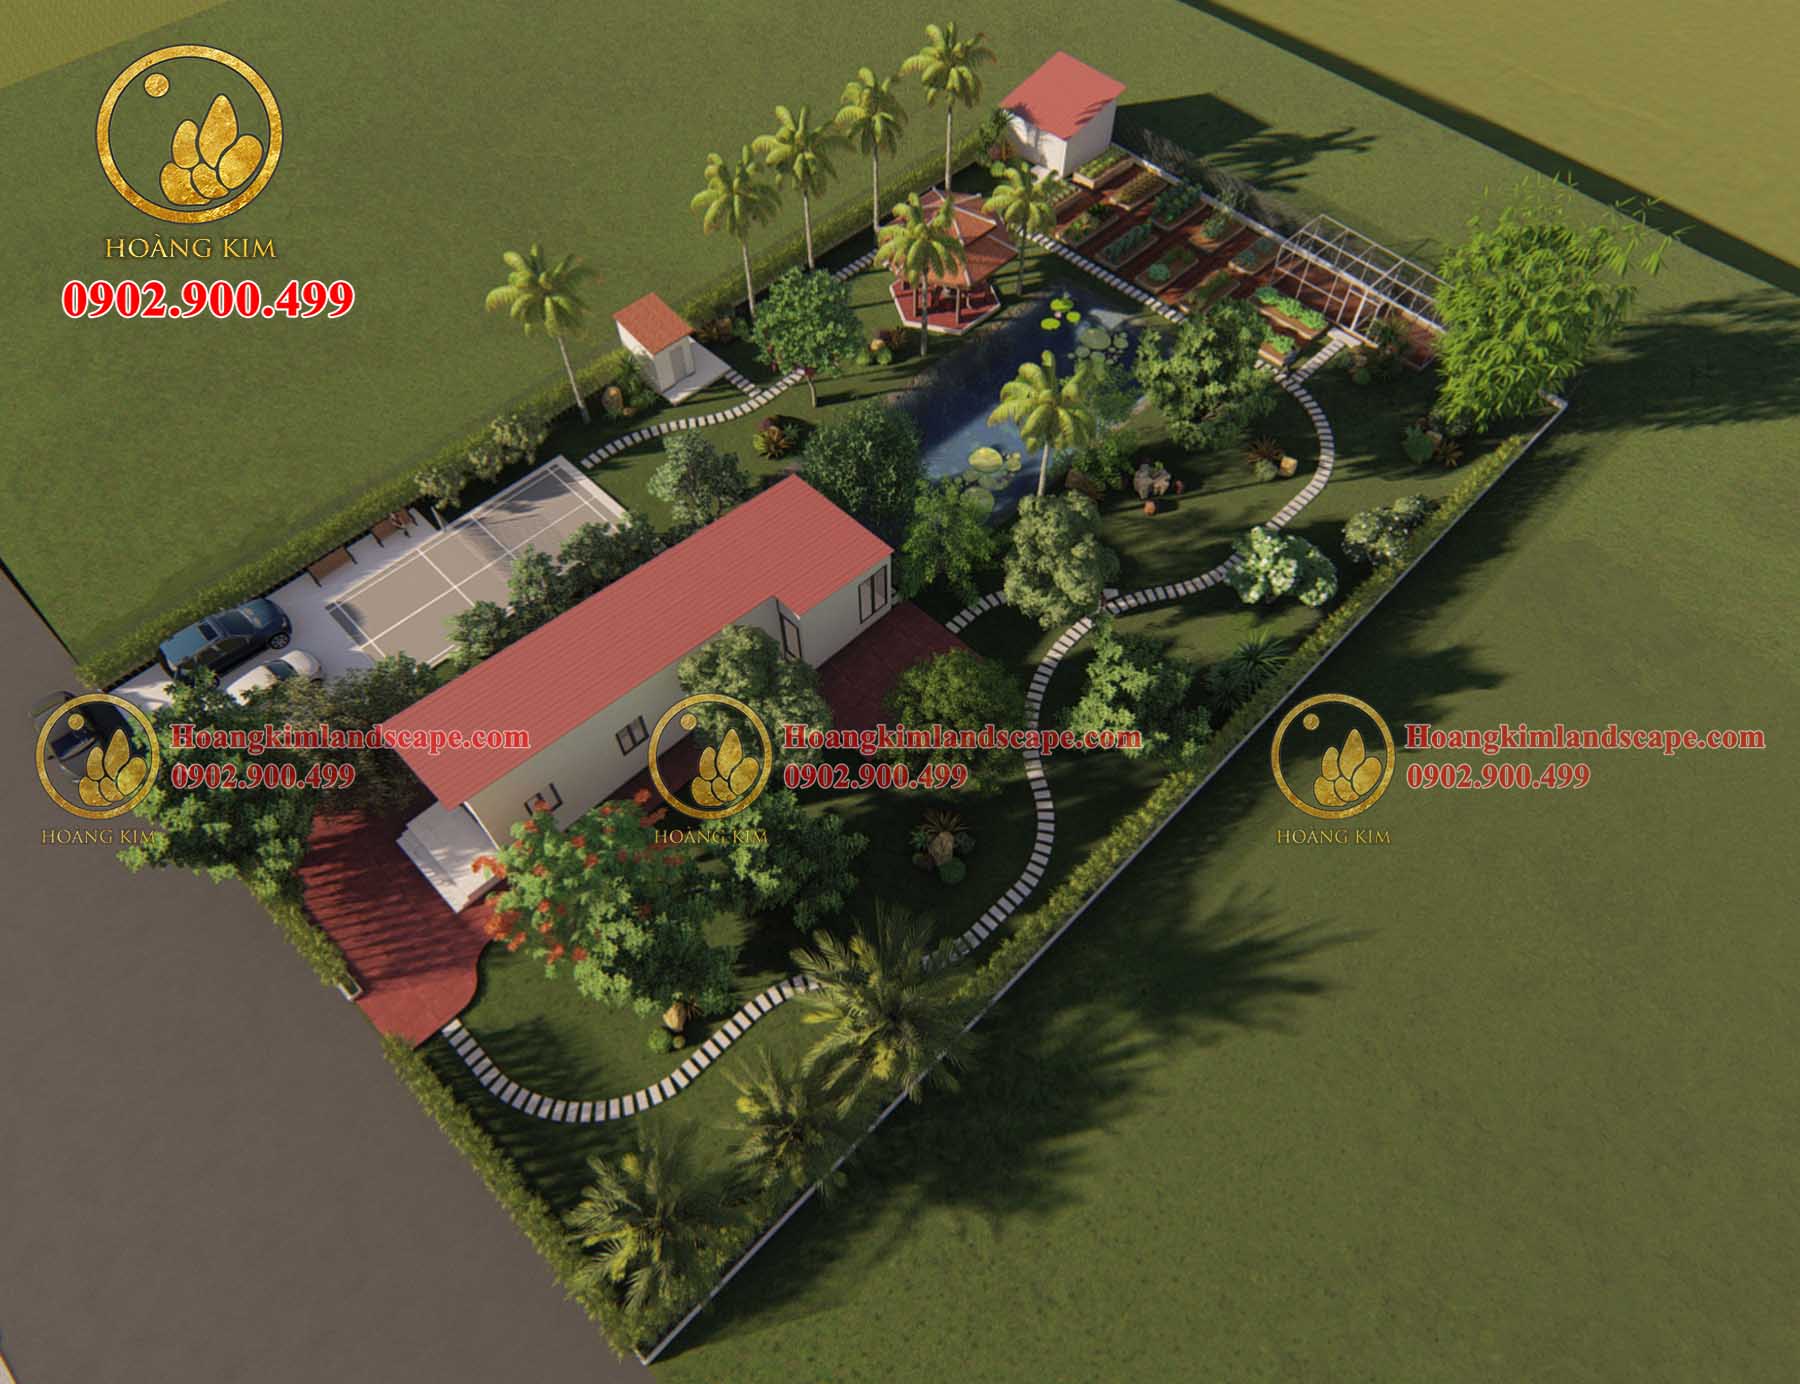 Bản thiết kế 3D sân vườn nhà anh Hiếu Bình Chánh